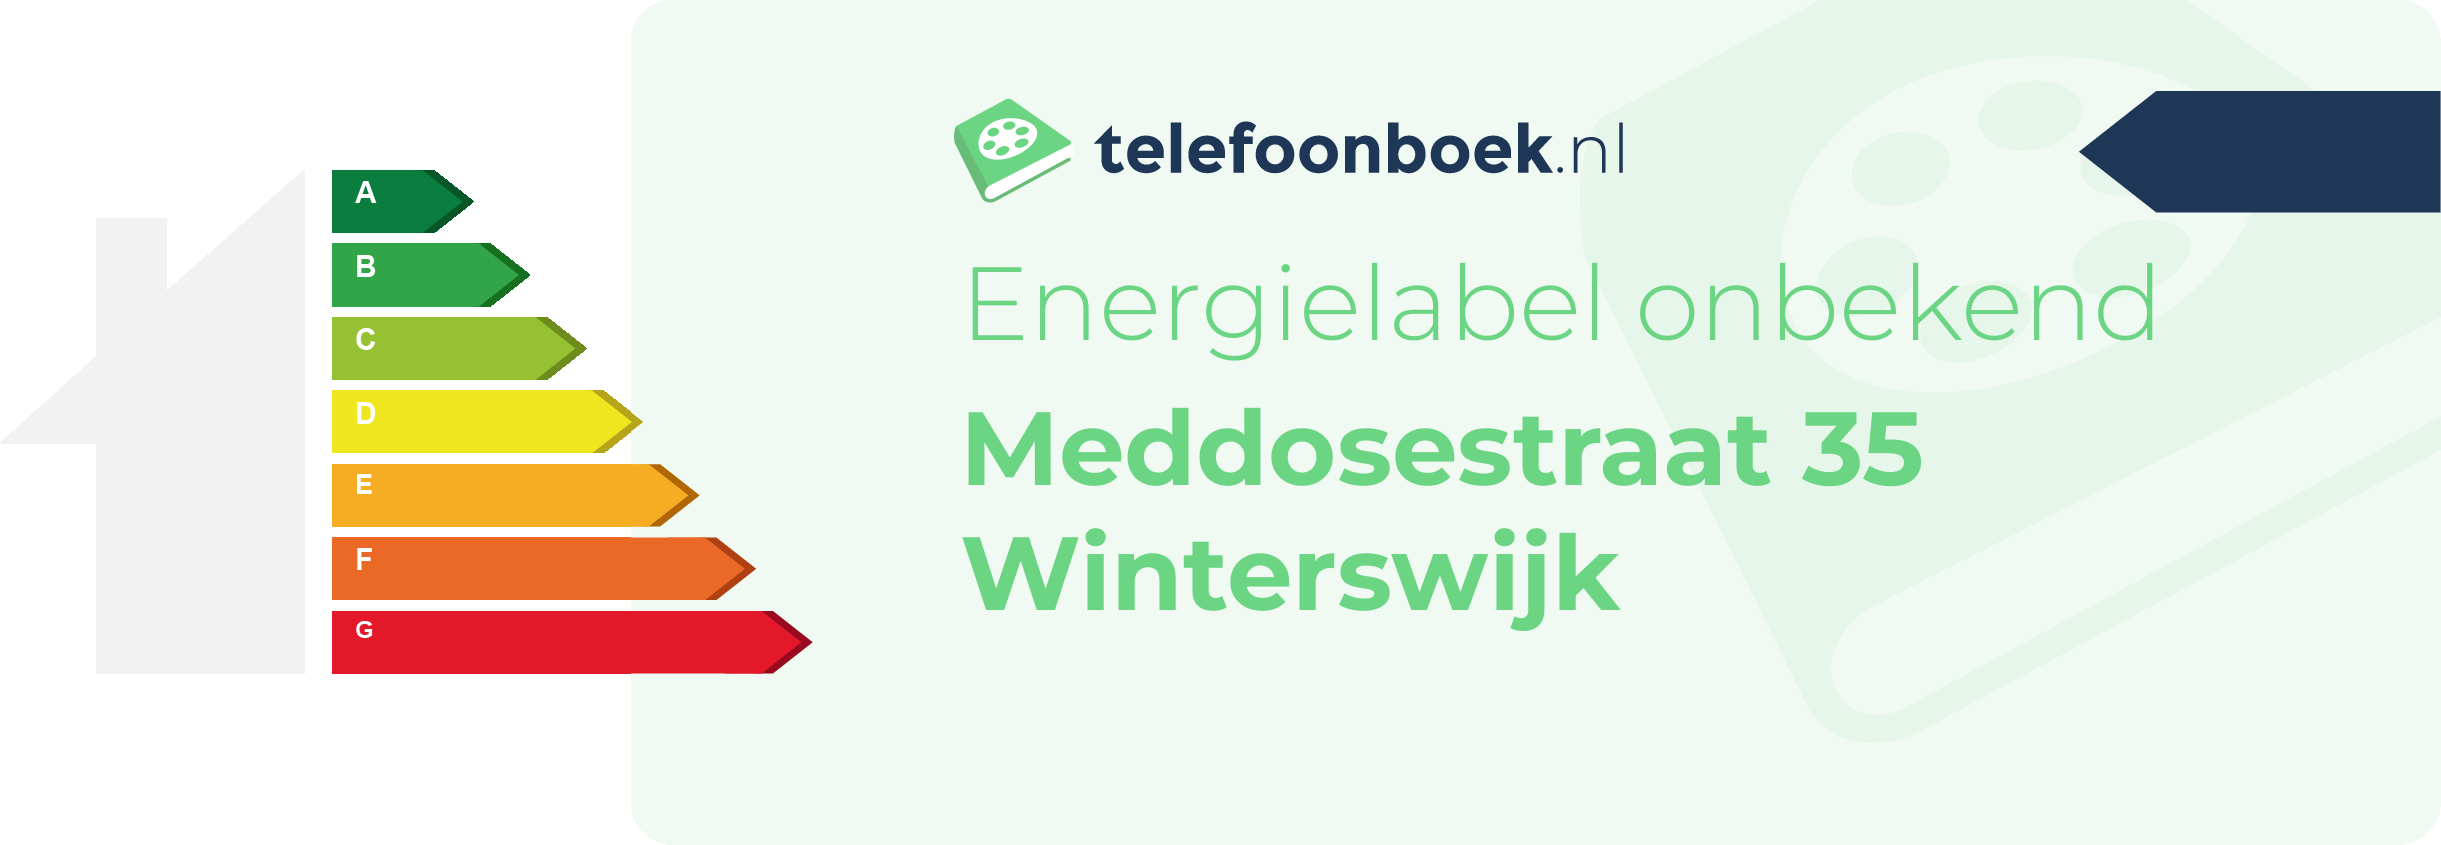 Energielabel Meddosestraat 35 Winterswijk